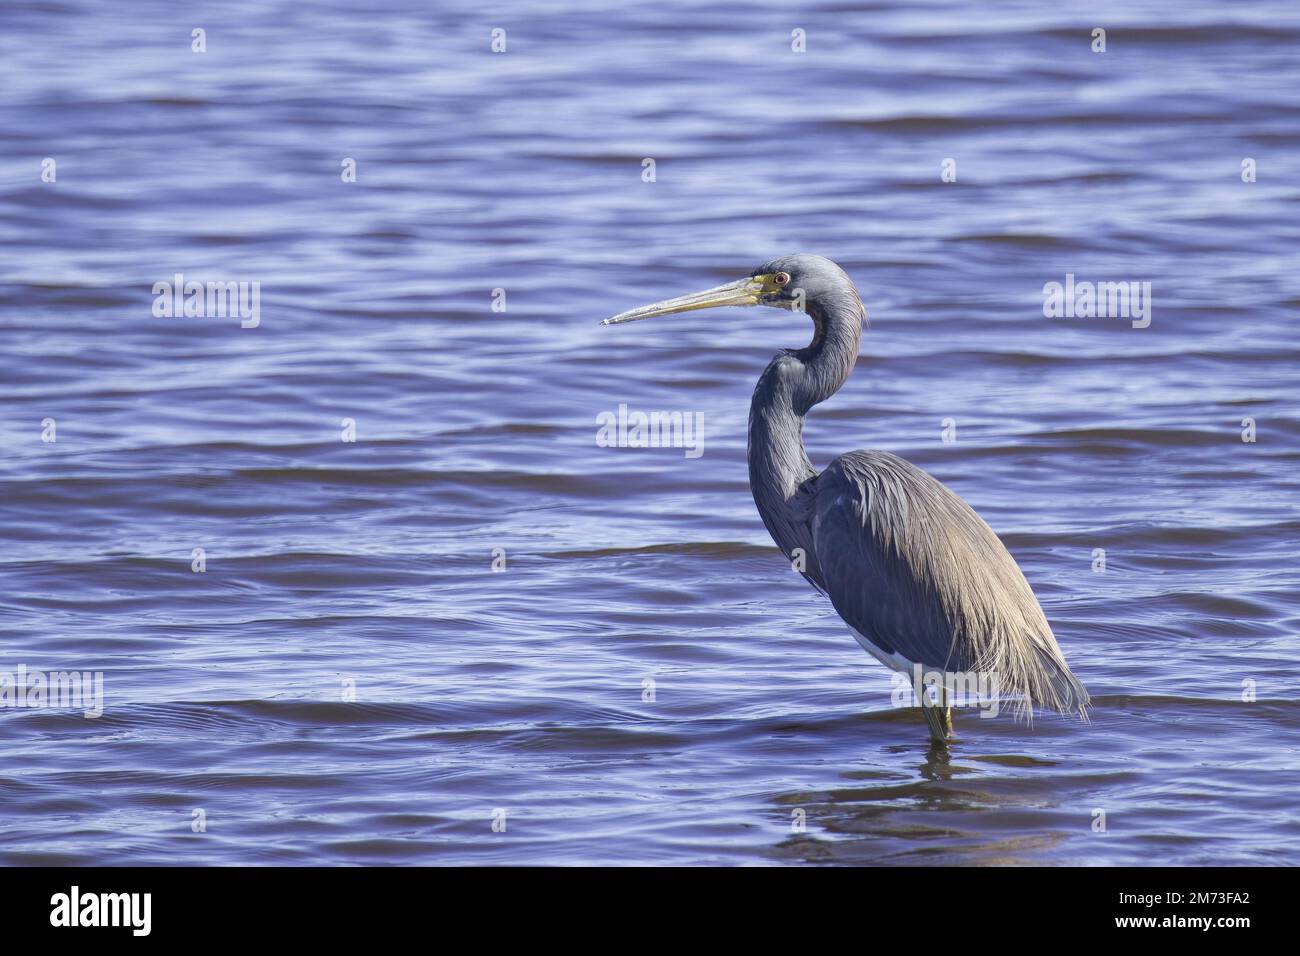 L'Heron tricolore in profilo laterale si erge nelle acque blu limpide di un lago della Florida che mostra le piume blu grigio malva piumare lungo collo curvo e becco Foto Stock